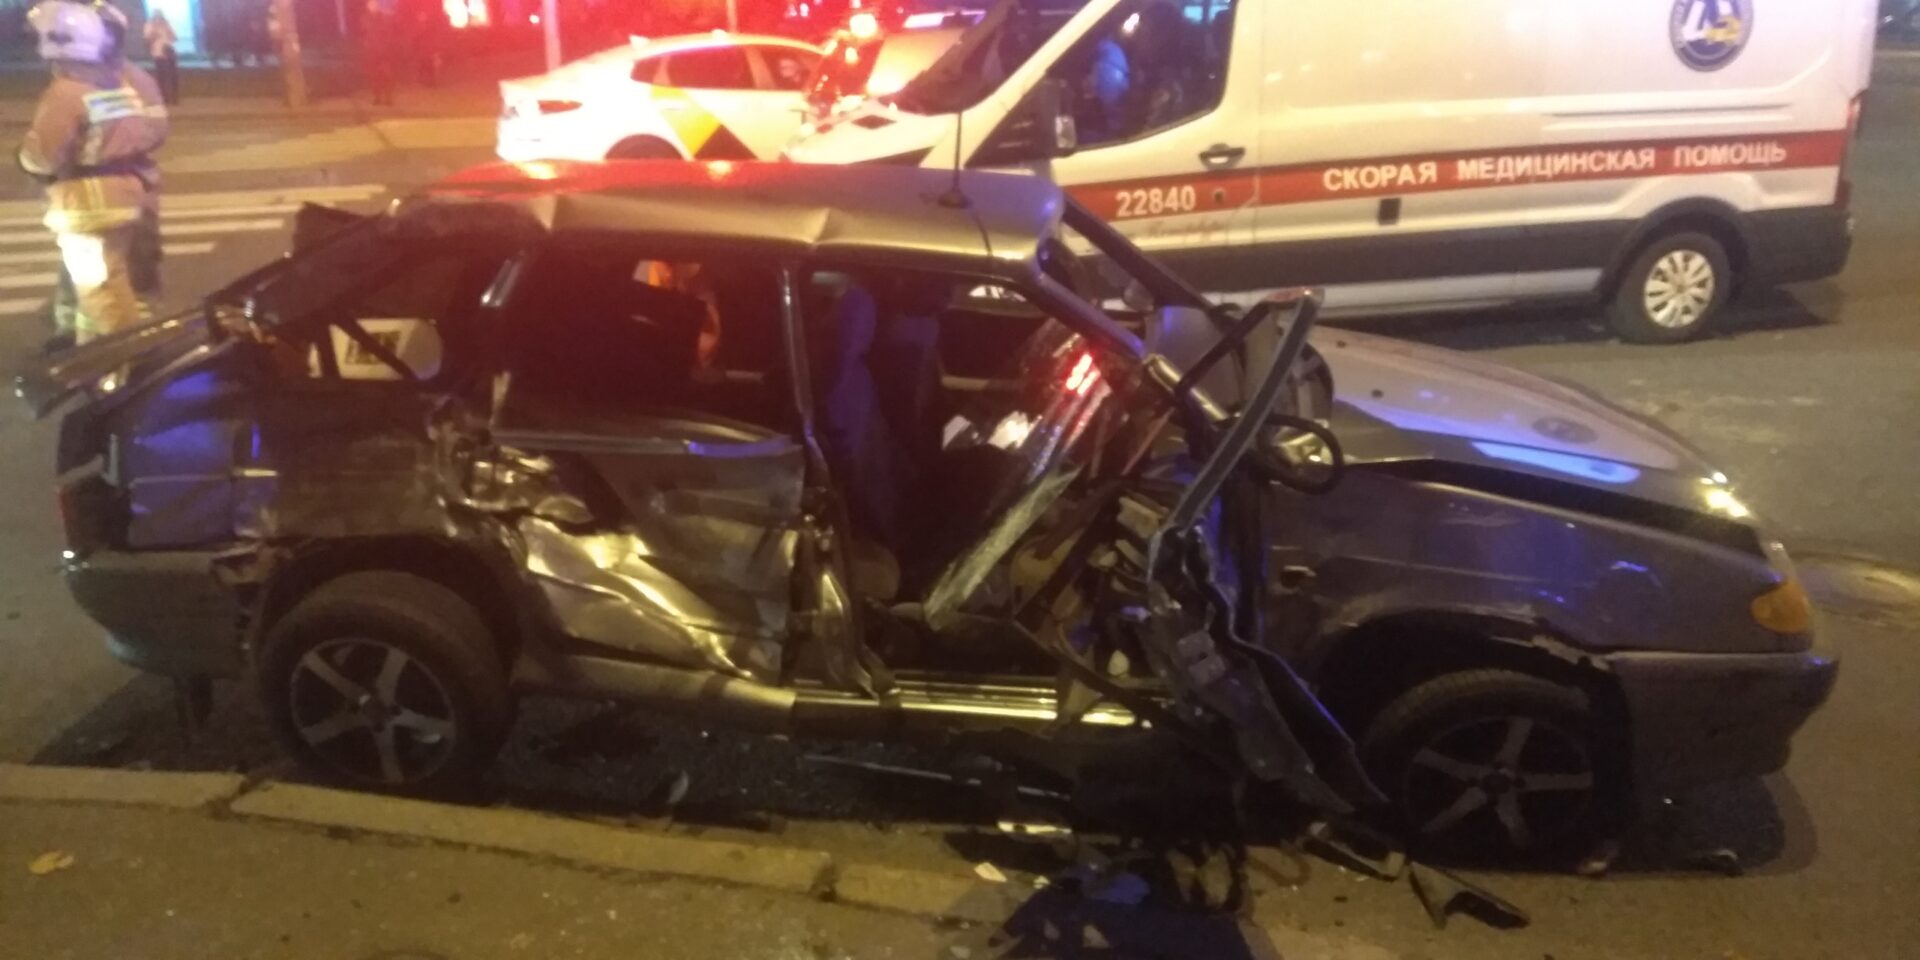 Три человека пострадали в ДТП с маршруткой в Петербурге